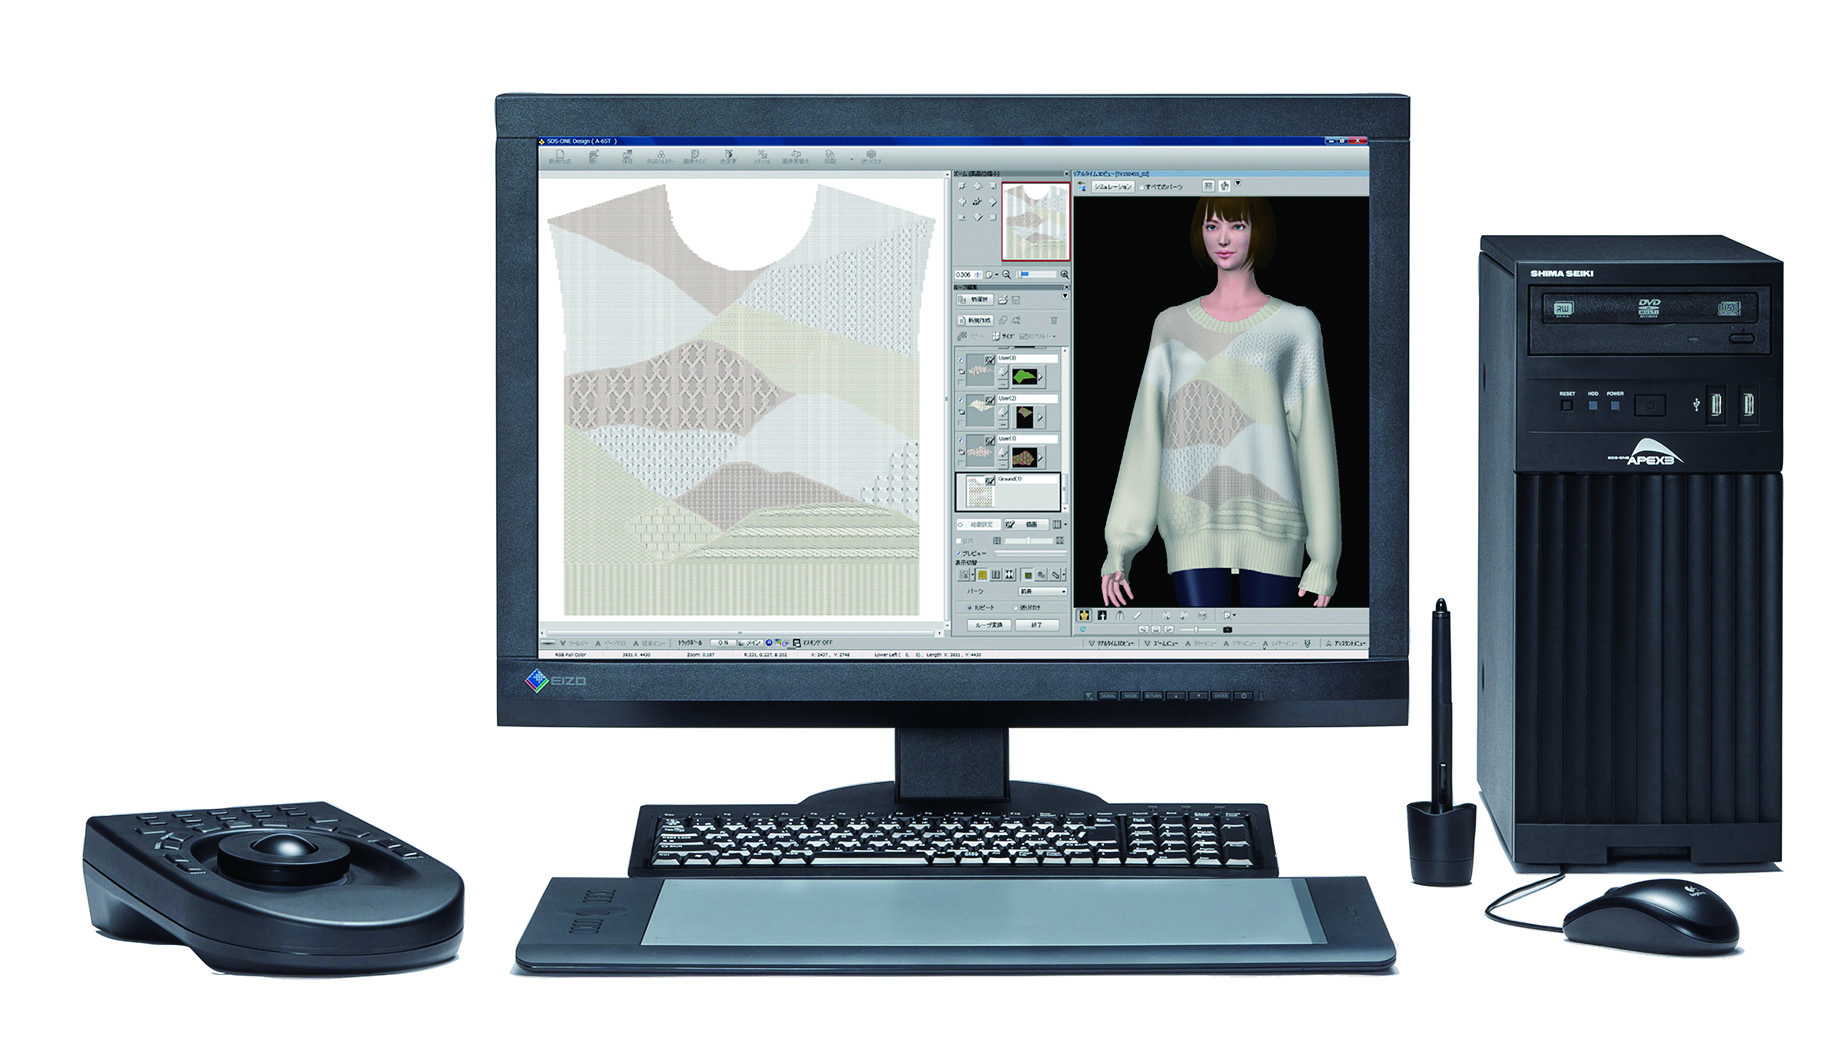 SDS ONE APEX3.3 3D apparel design system. © Shima Seiki